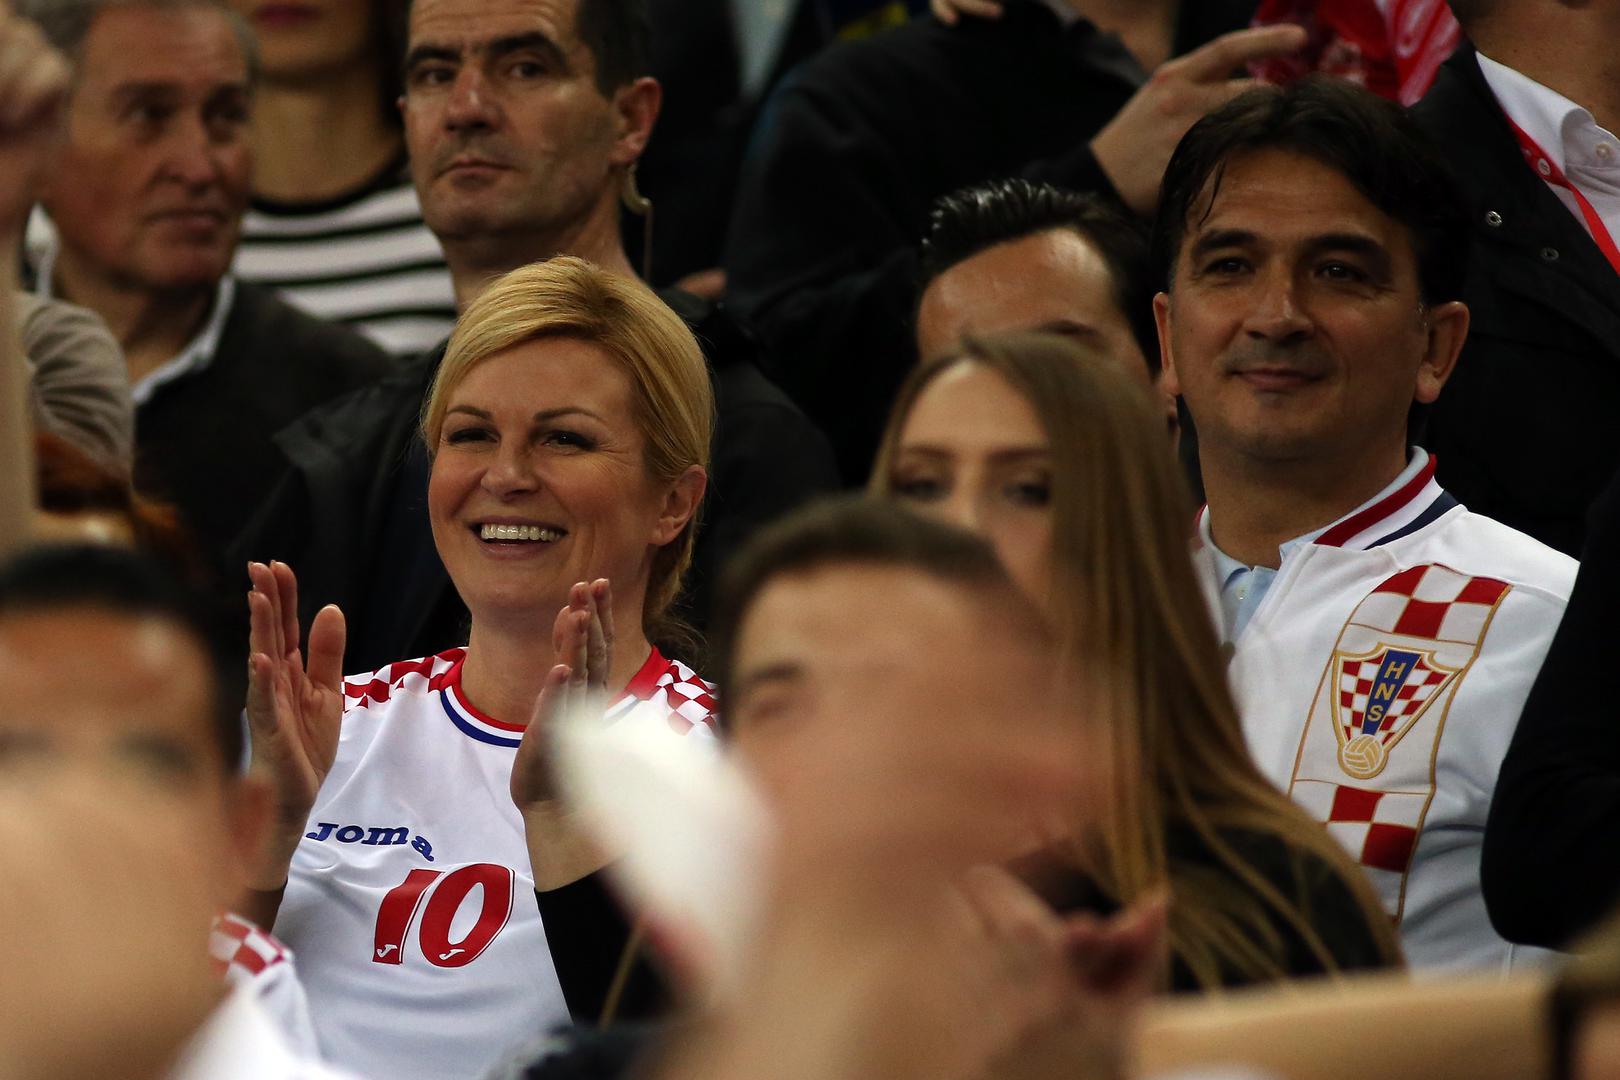 Predsjednica je susret gledala u dresu rukometne reprezentacije, a Dalić u dresu nogometne 